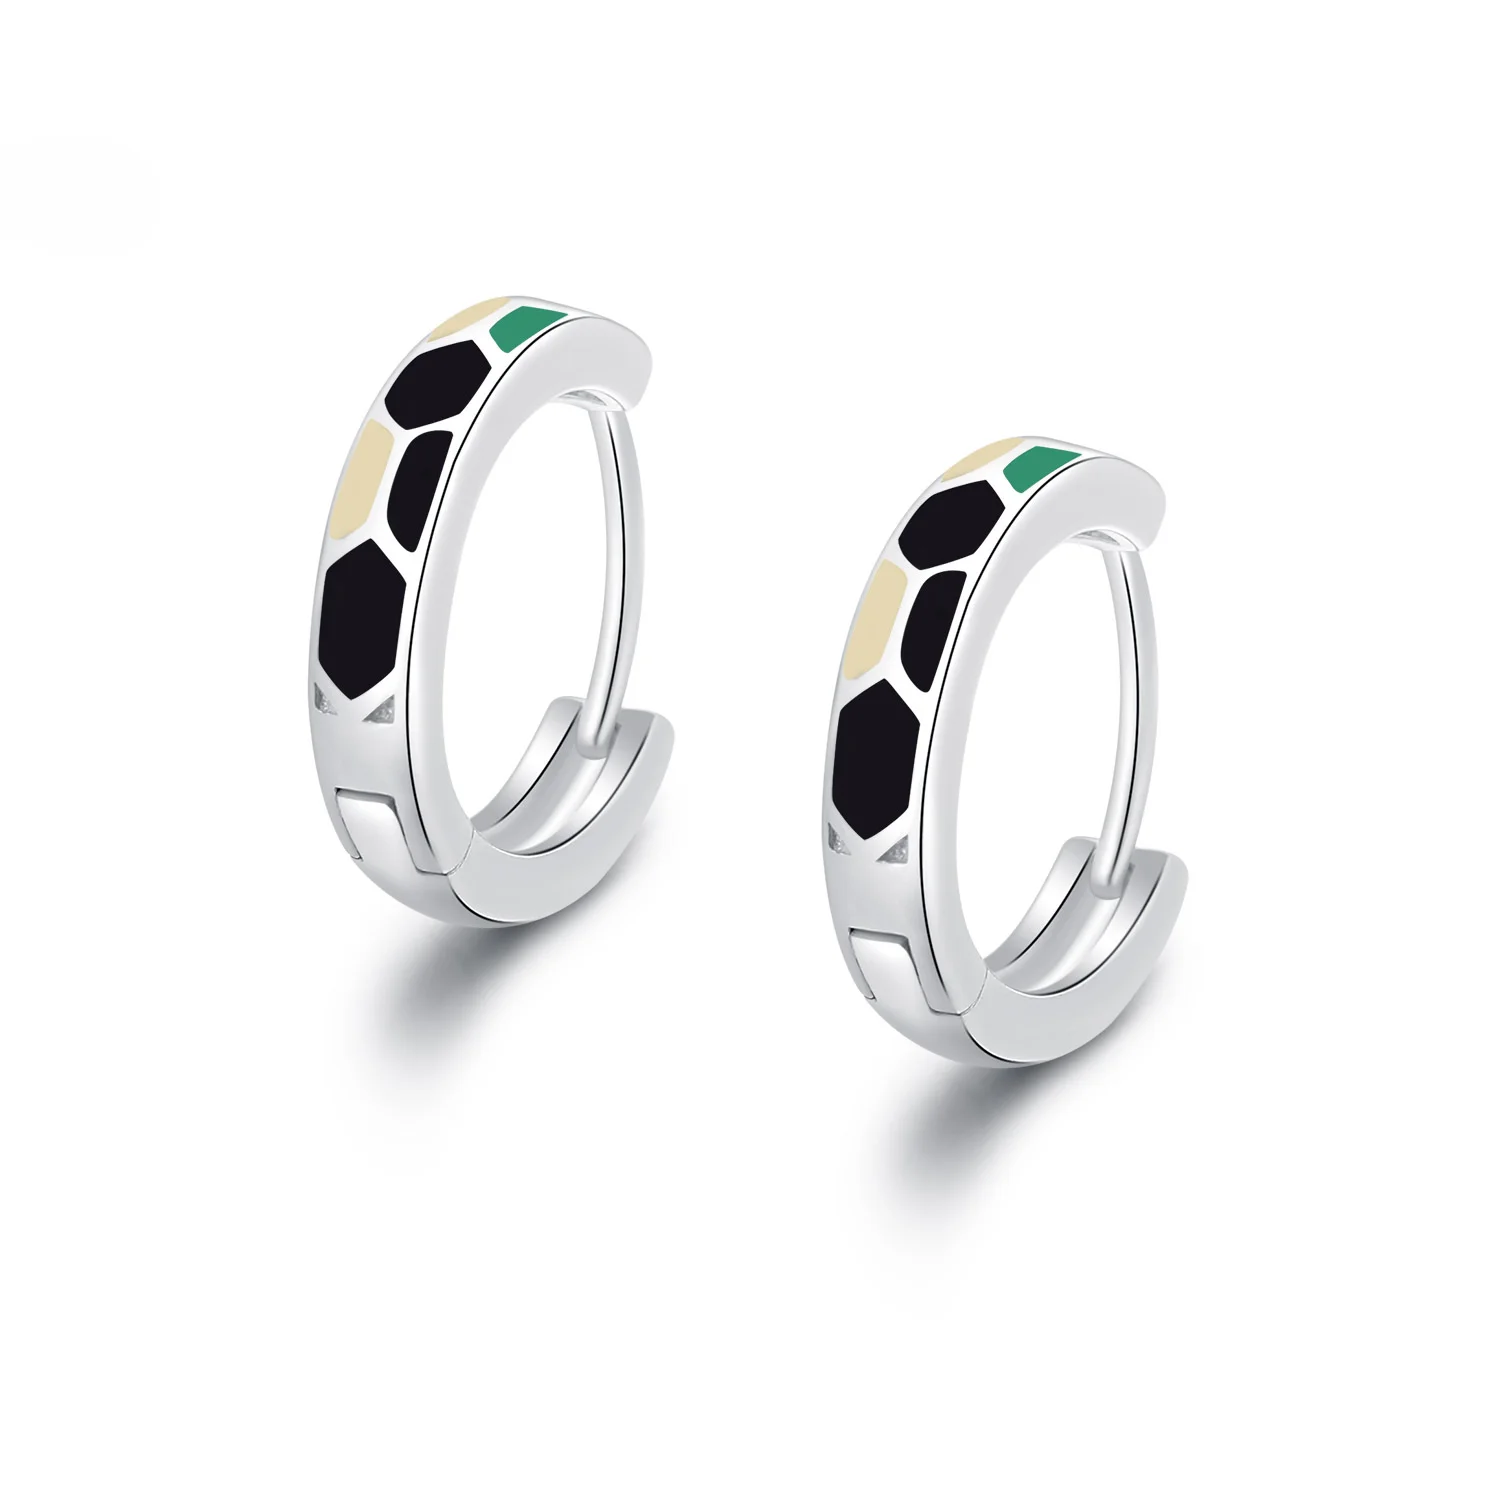 SA SILVERAGE, 925 пробы, серебряные, зеленые/белые/черные, три цвета, квадратные серьги-кольца для женщин, 925, серебряные серьги в виде змеи